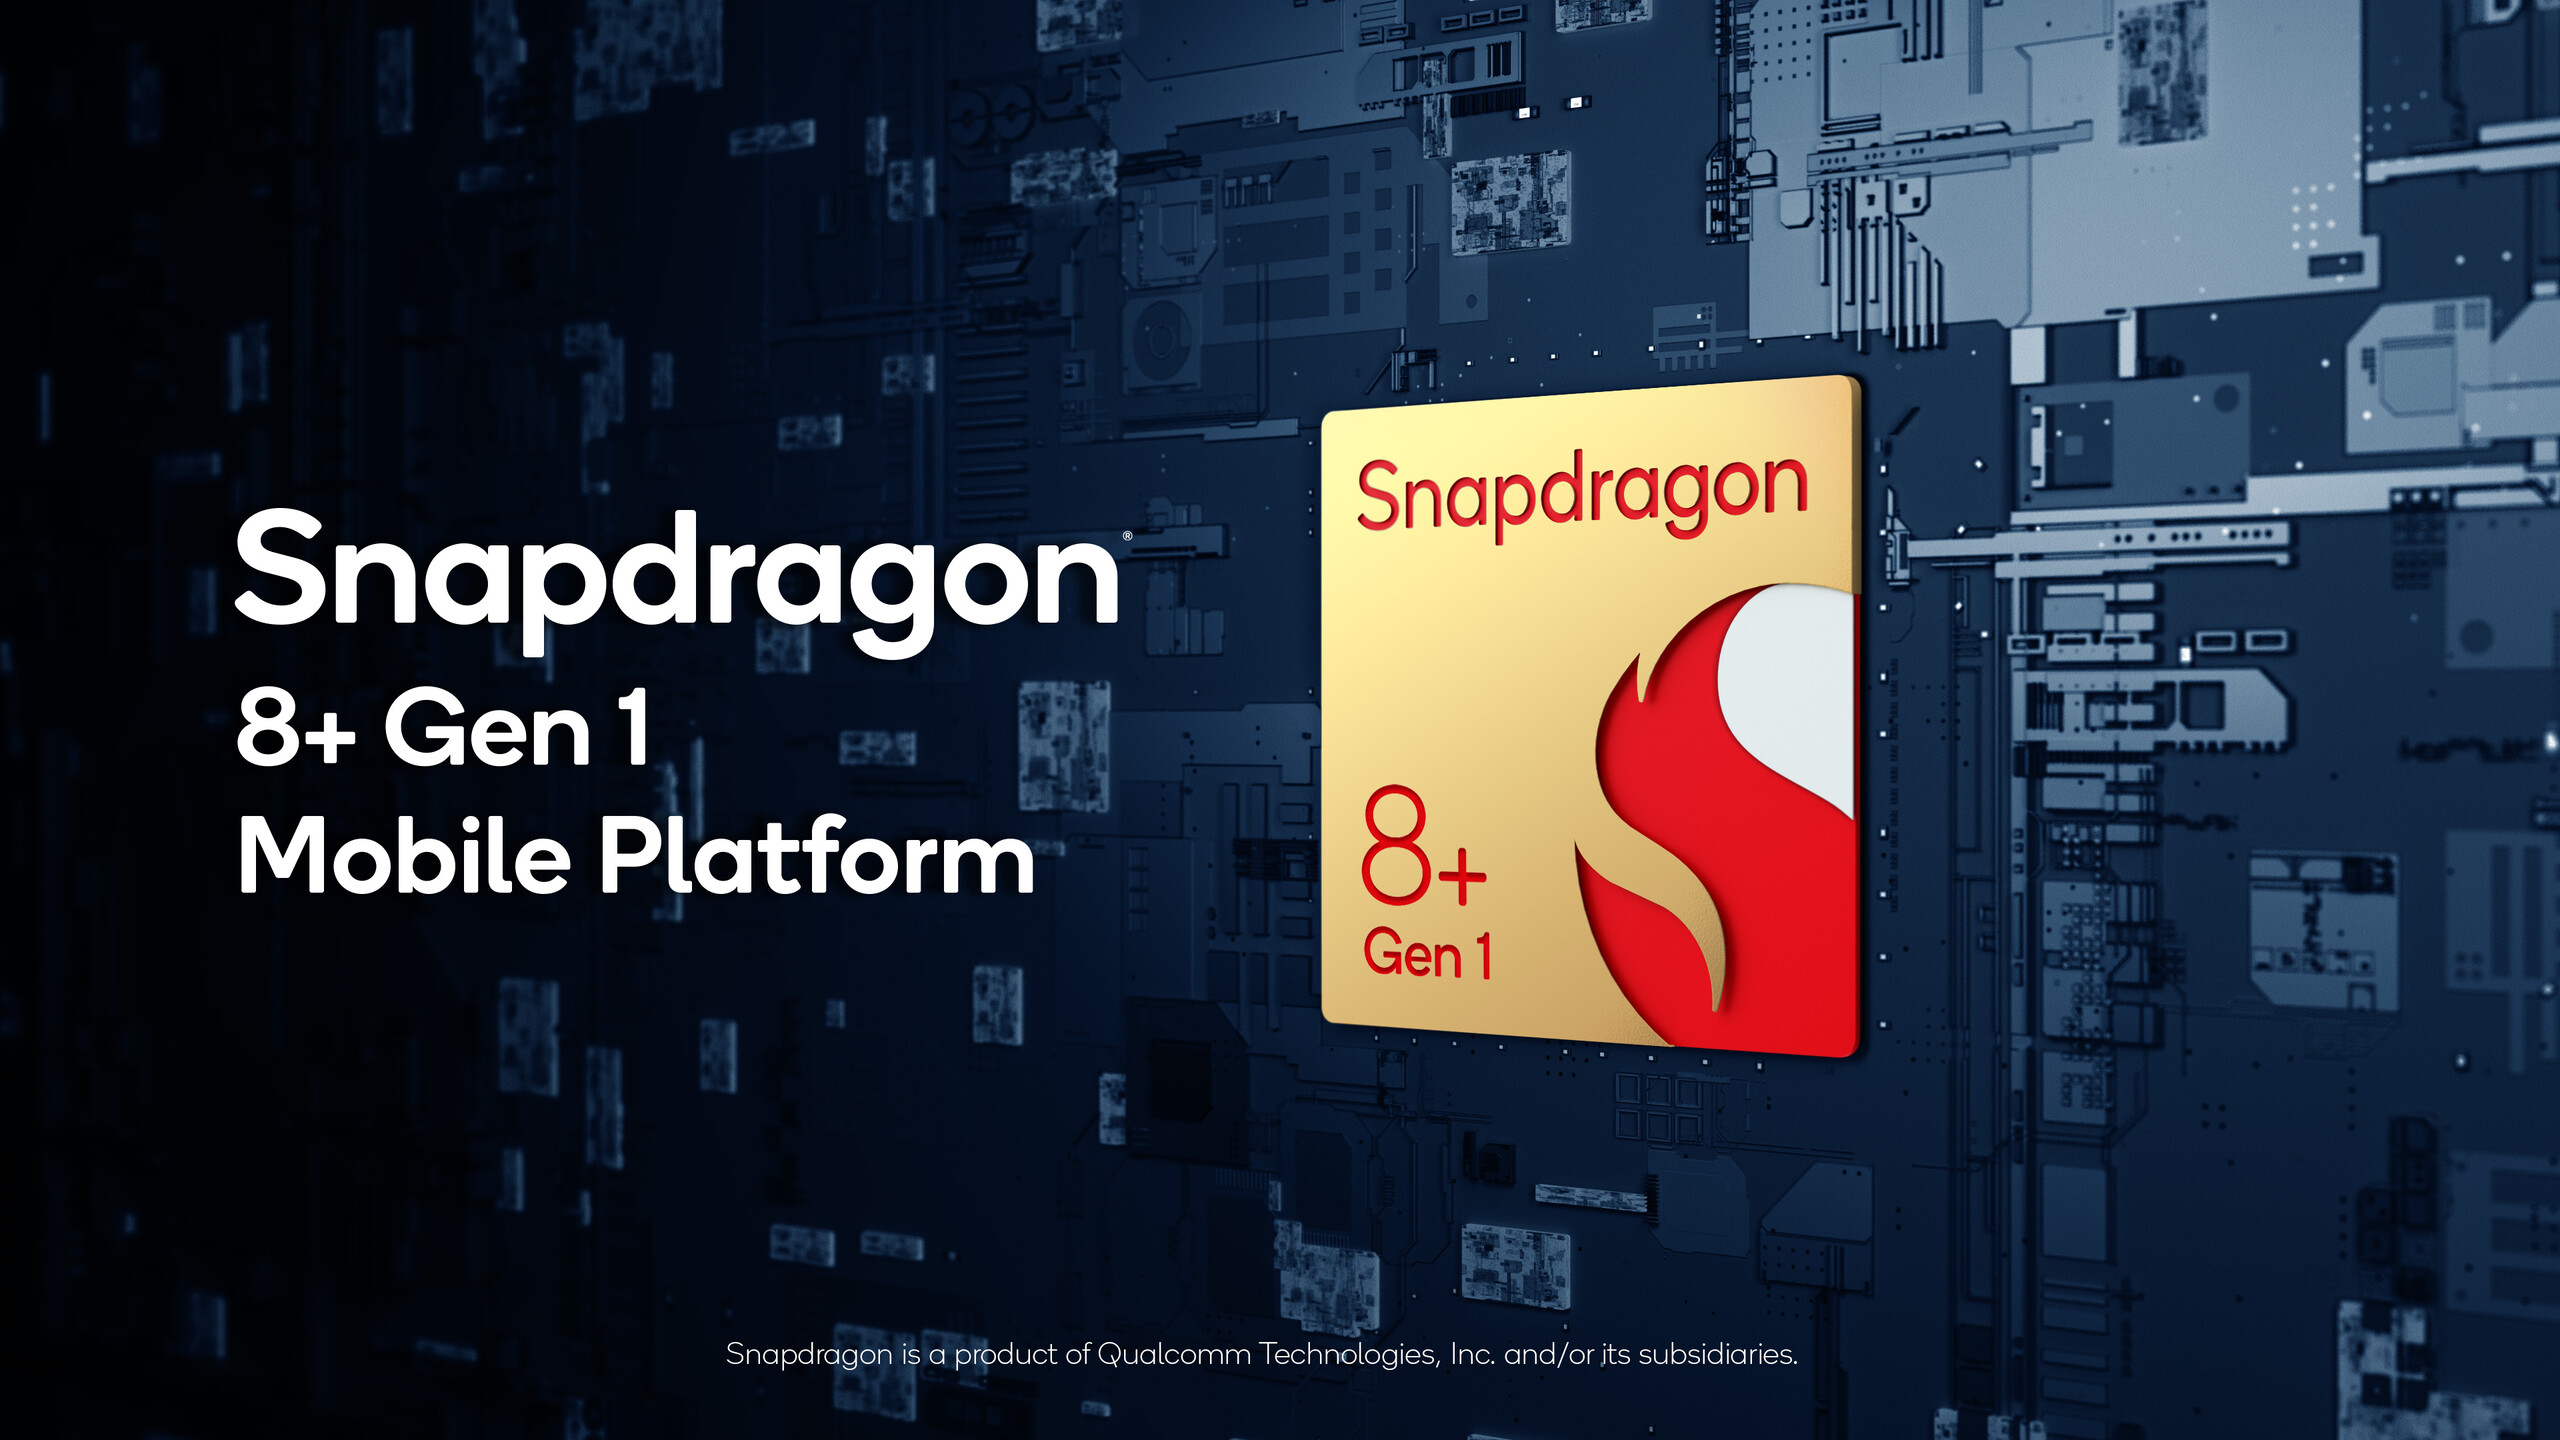 Snapdragon 8+ Gen 1 smartphones